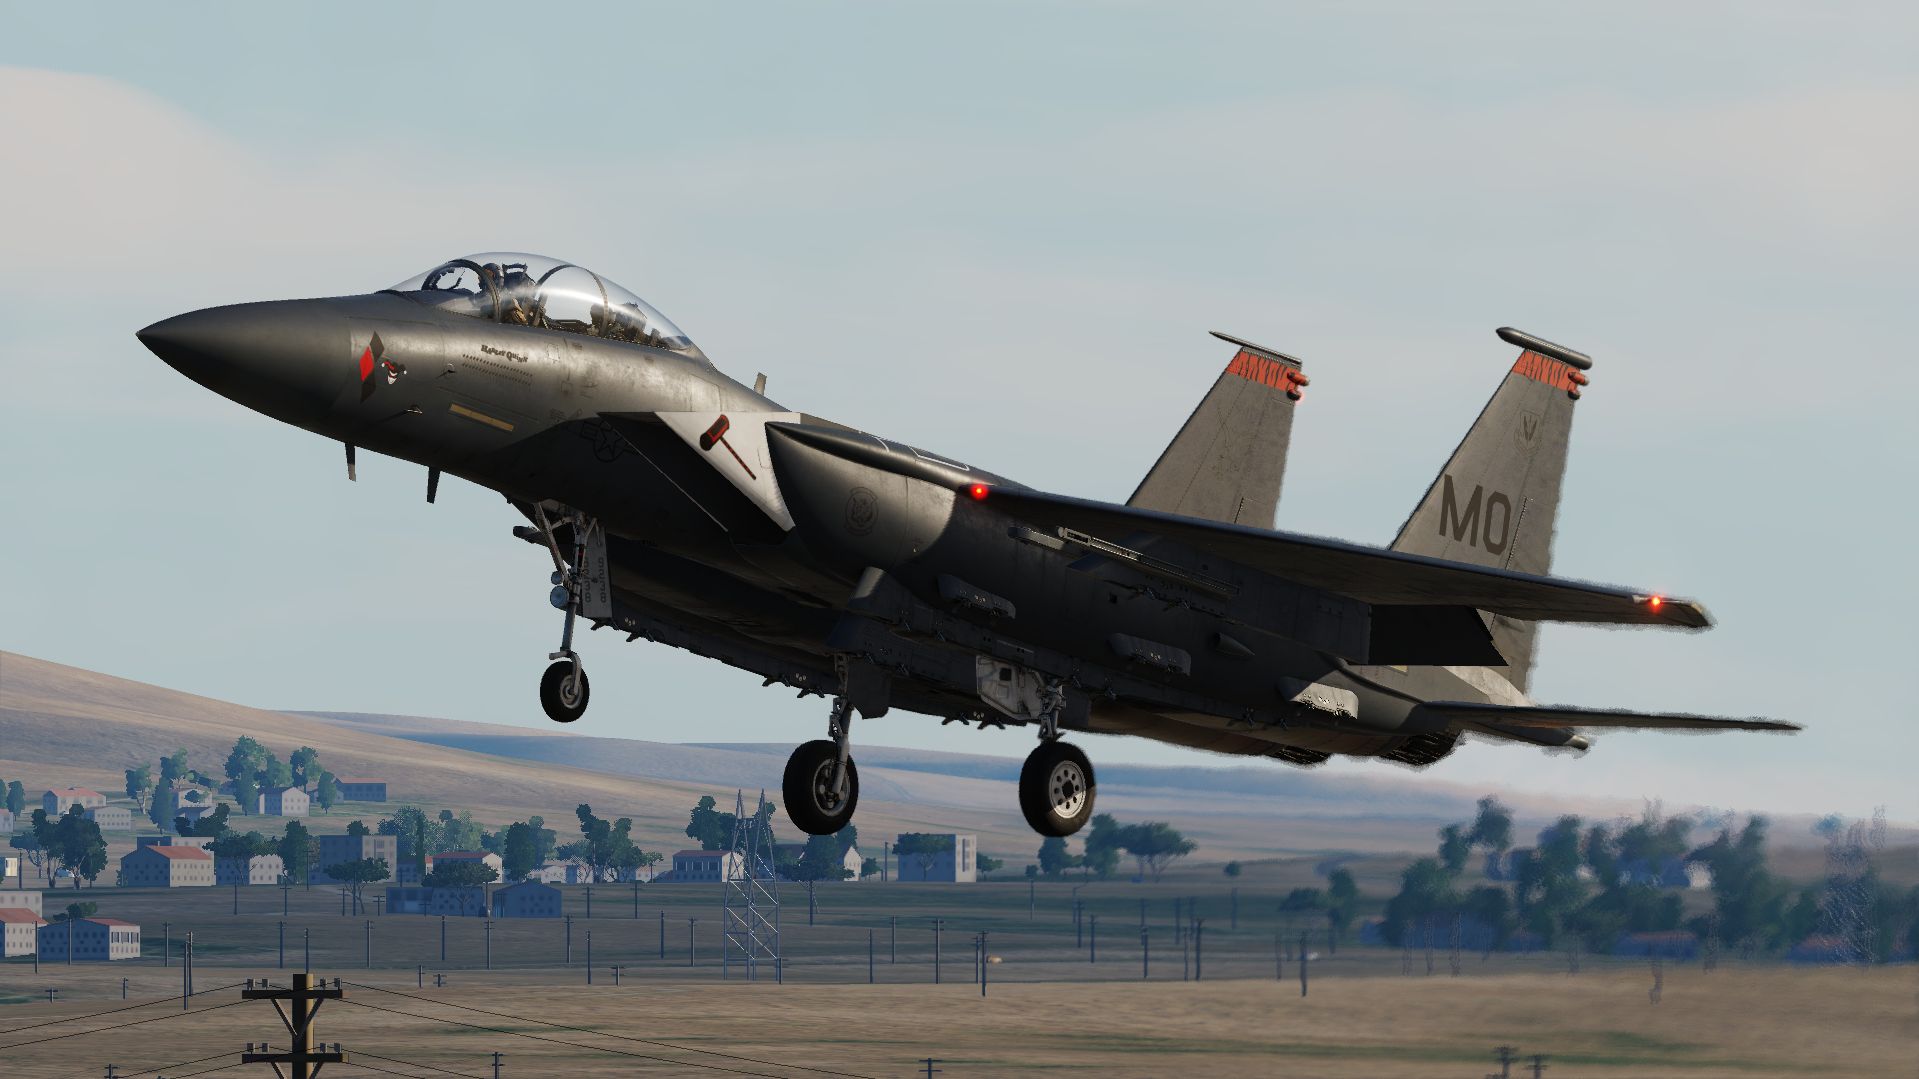 F-15E Strike eagle MO 90-238 "Harley Quinn" (UPDATED)